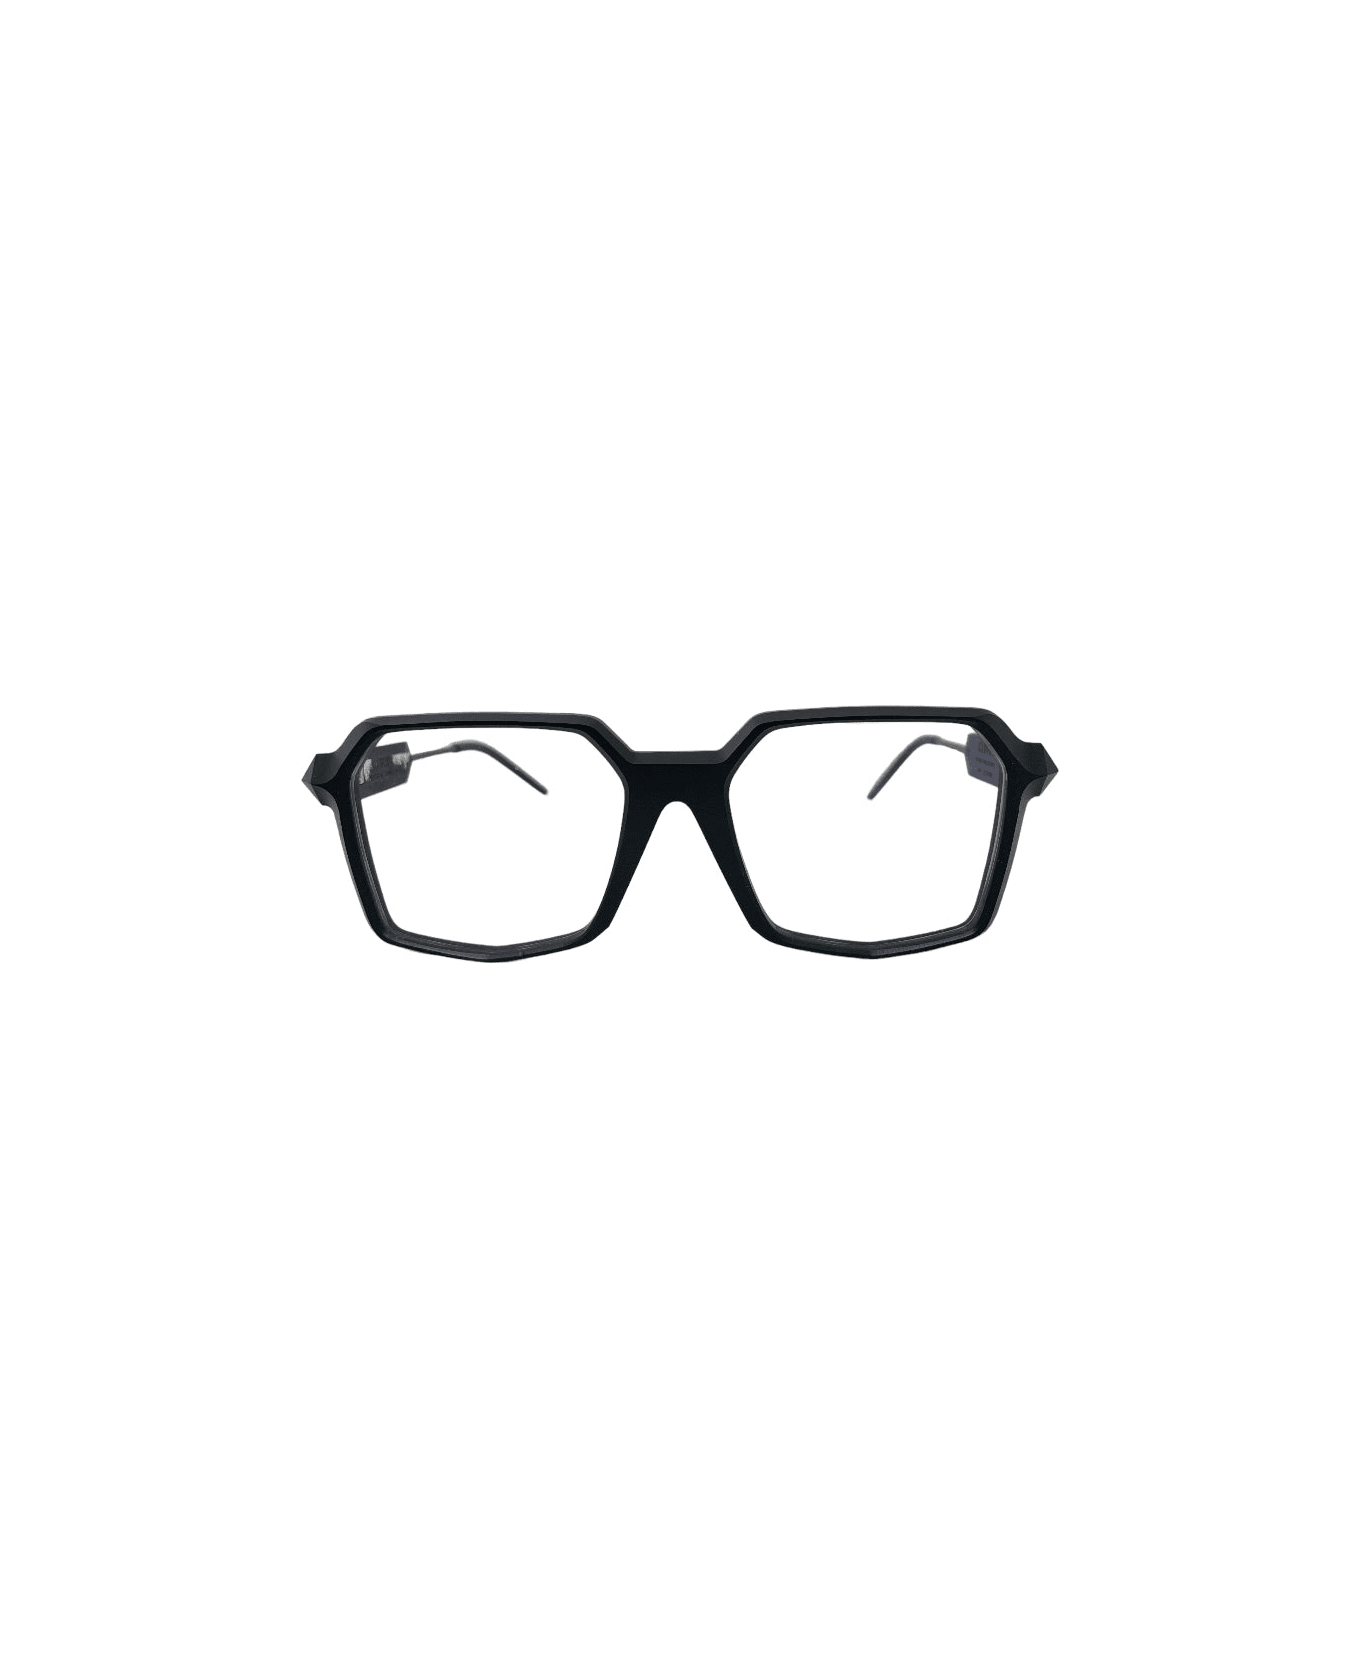 SO.YA Square - Matte Black Glasses アイウェア